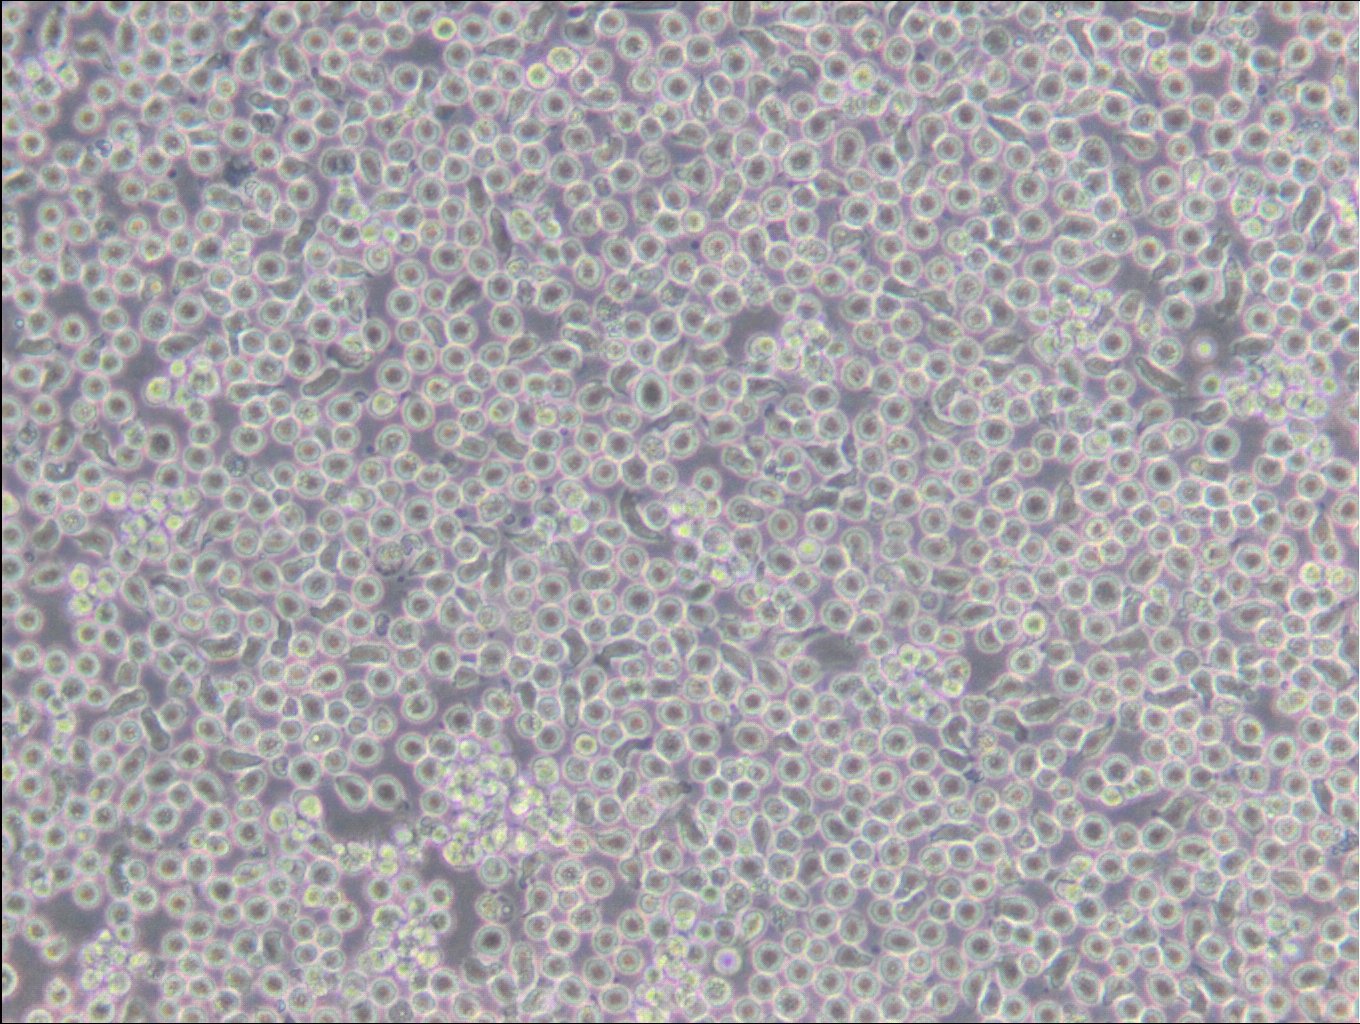 6T-CEM-Zellen